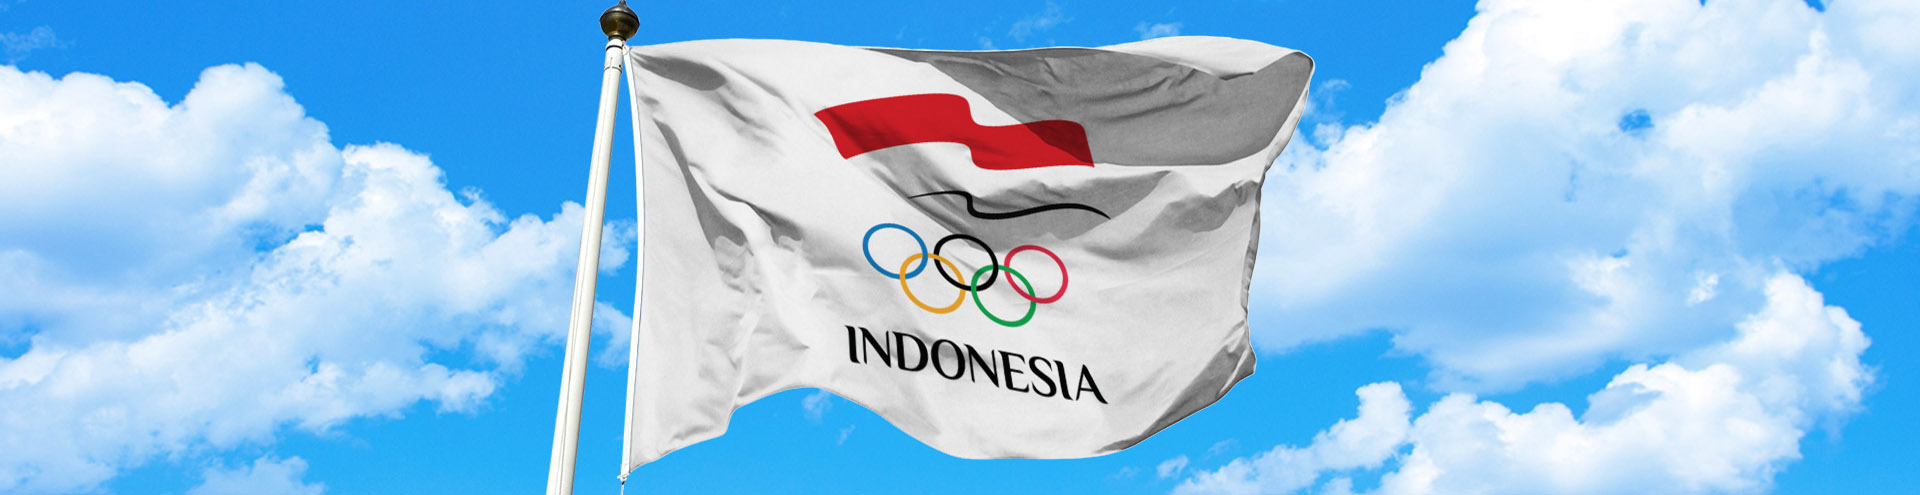 Indonesia Olympic Commitee - Raja Sapta Oktohari Elected as Indonesian Olympic Committee President